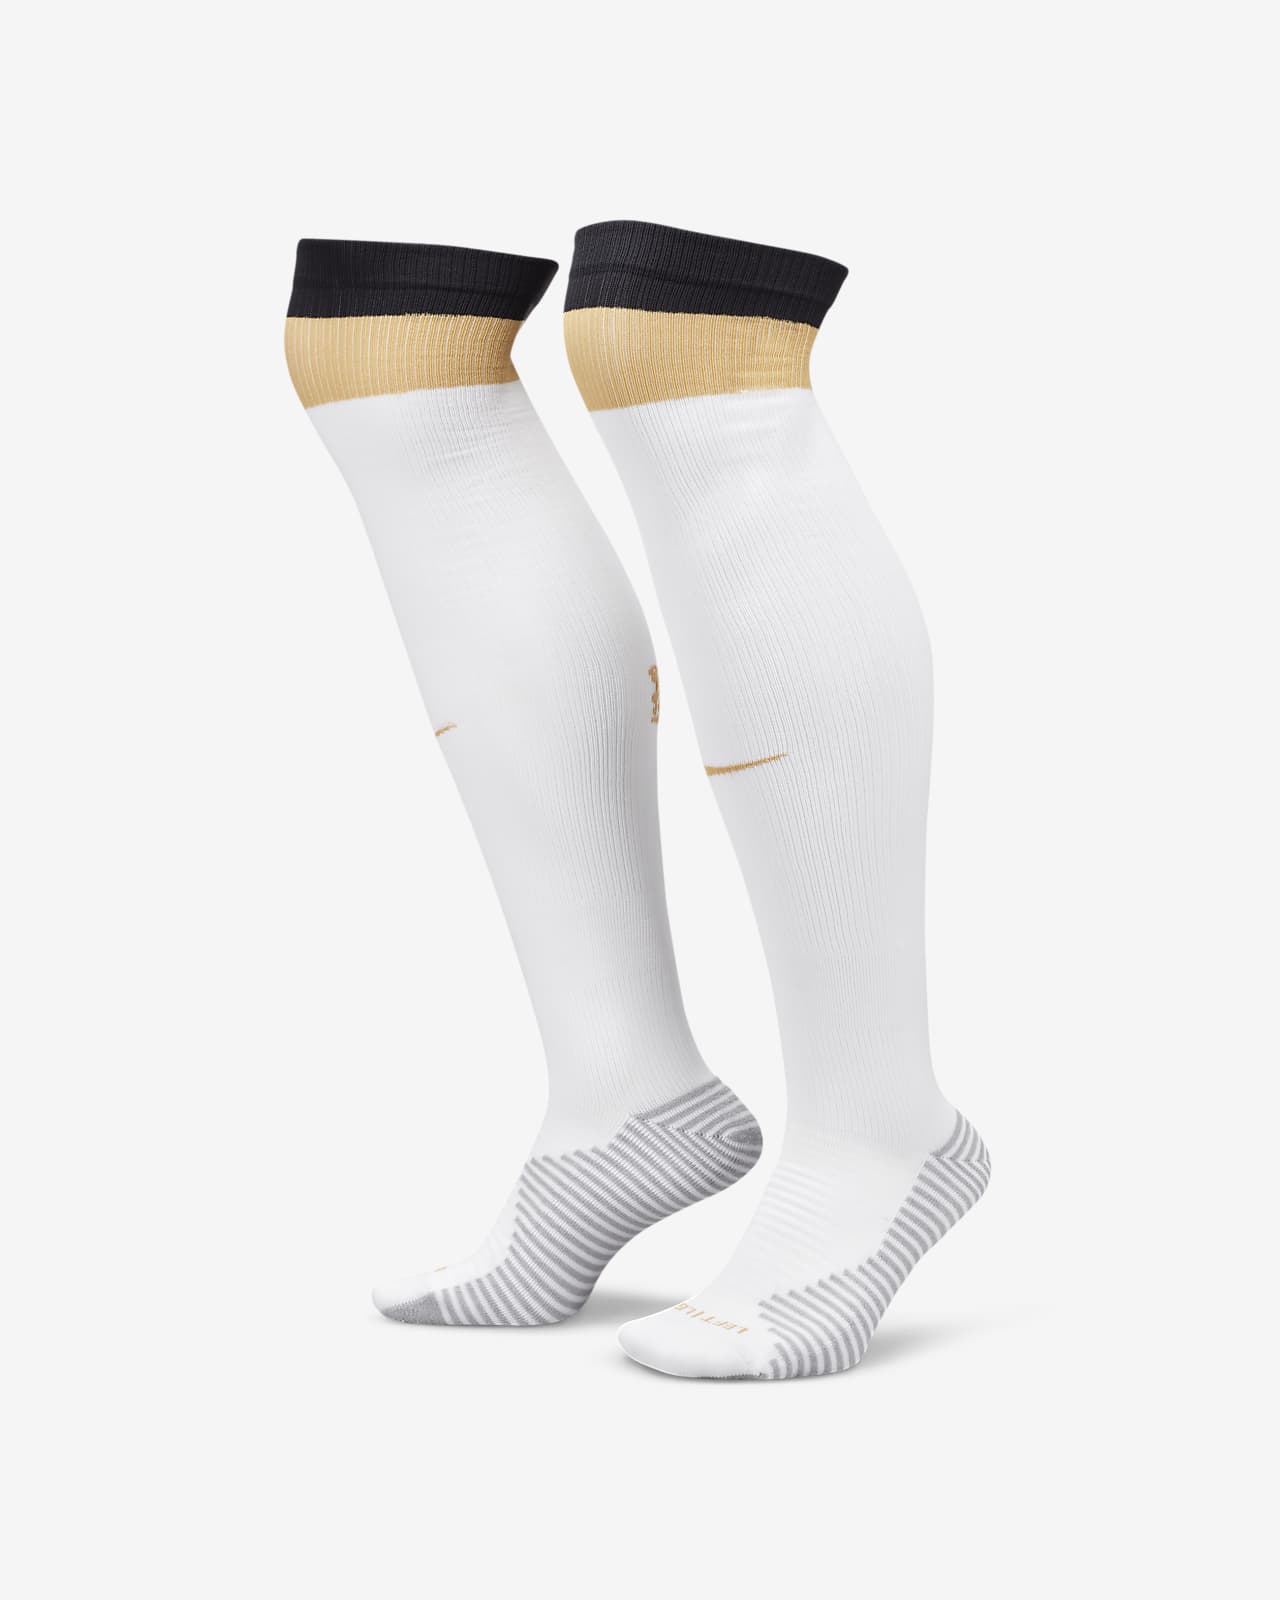 Ποδοσφαιρικές κάλτσες μέχρι το γόνατο εντός/εκτός έδρας Τσέλσι Strike